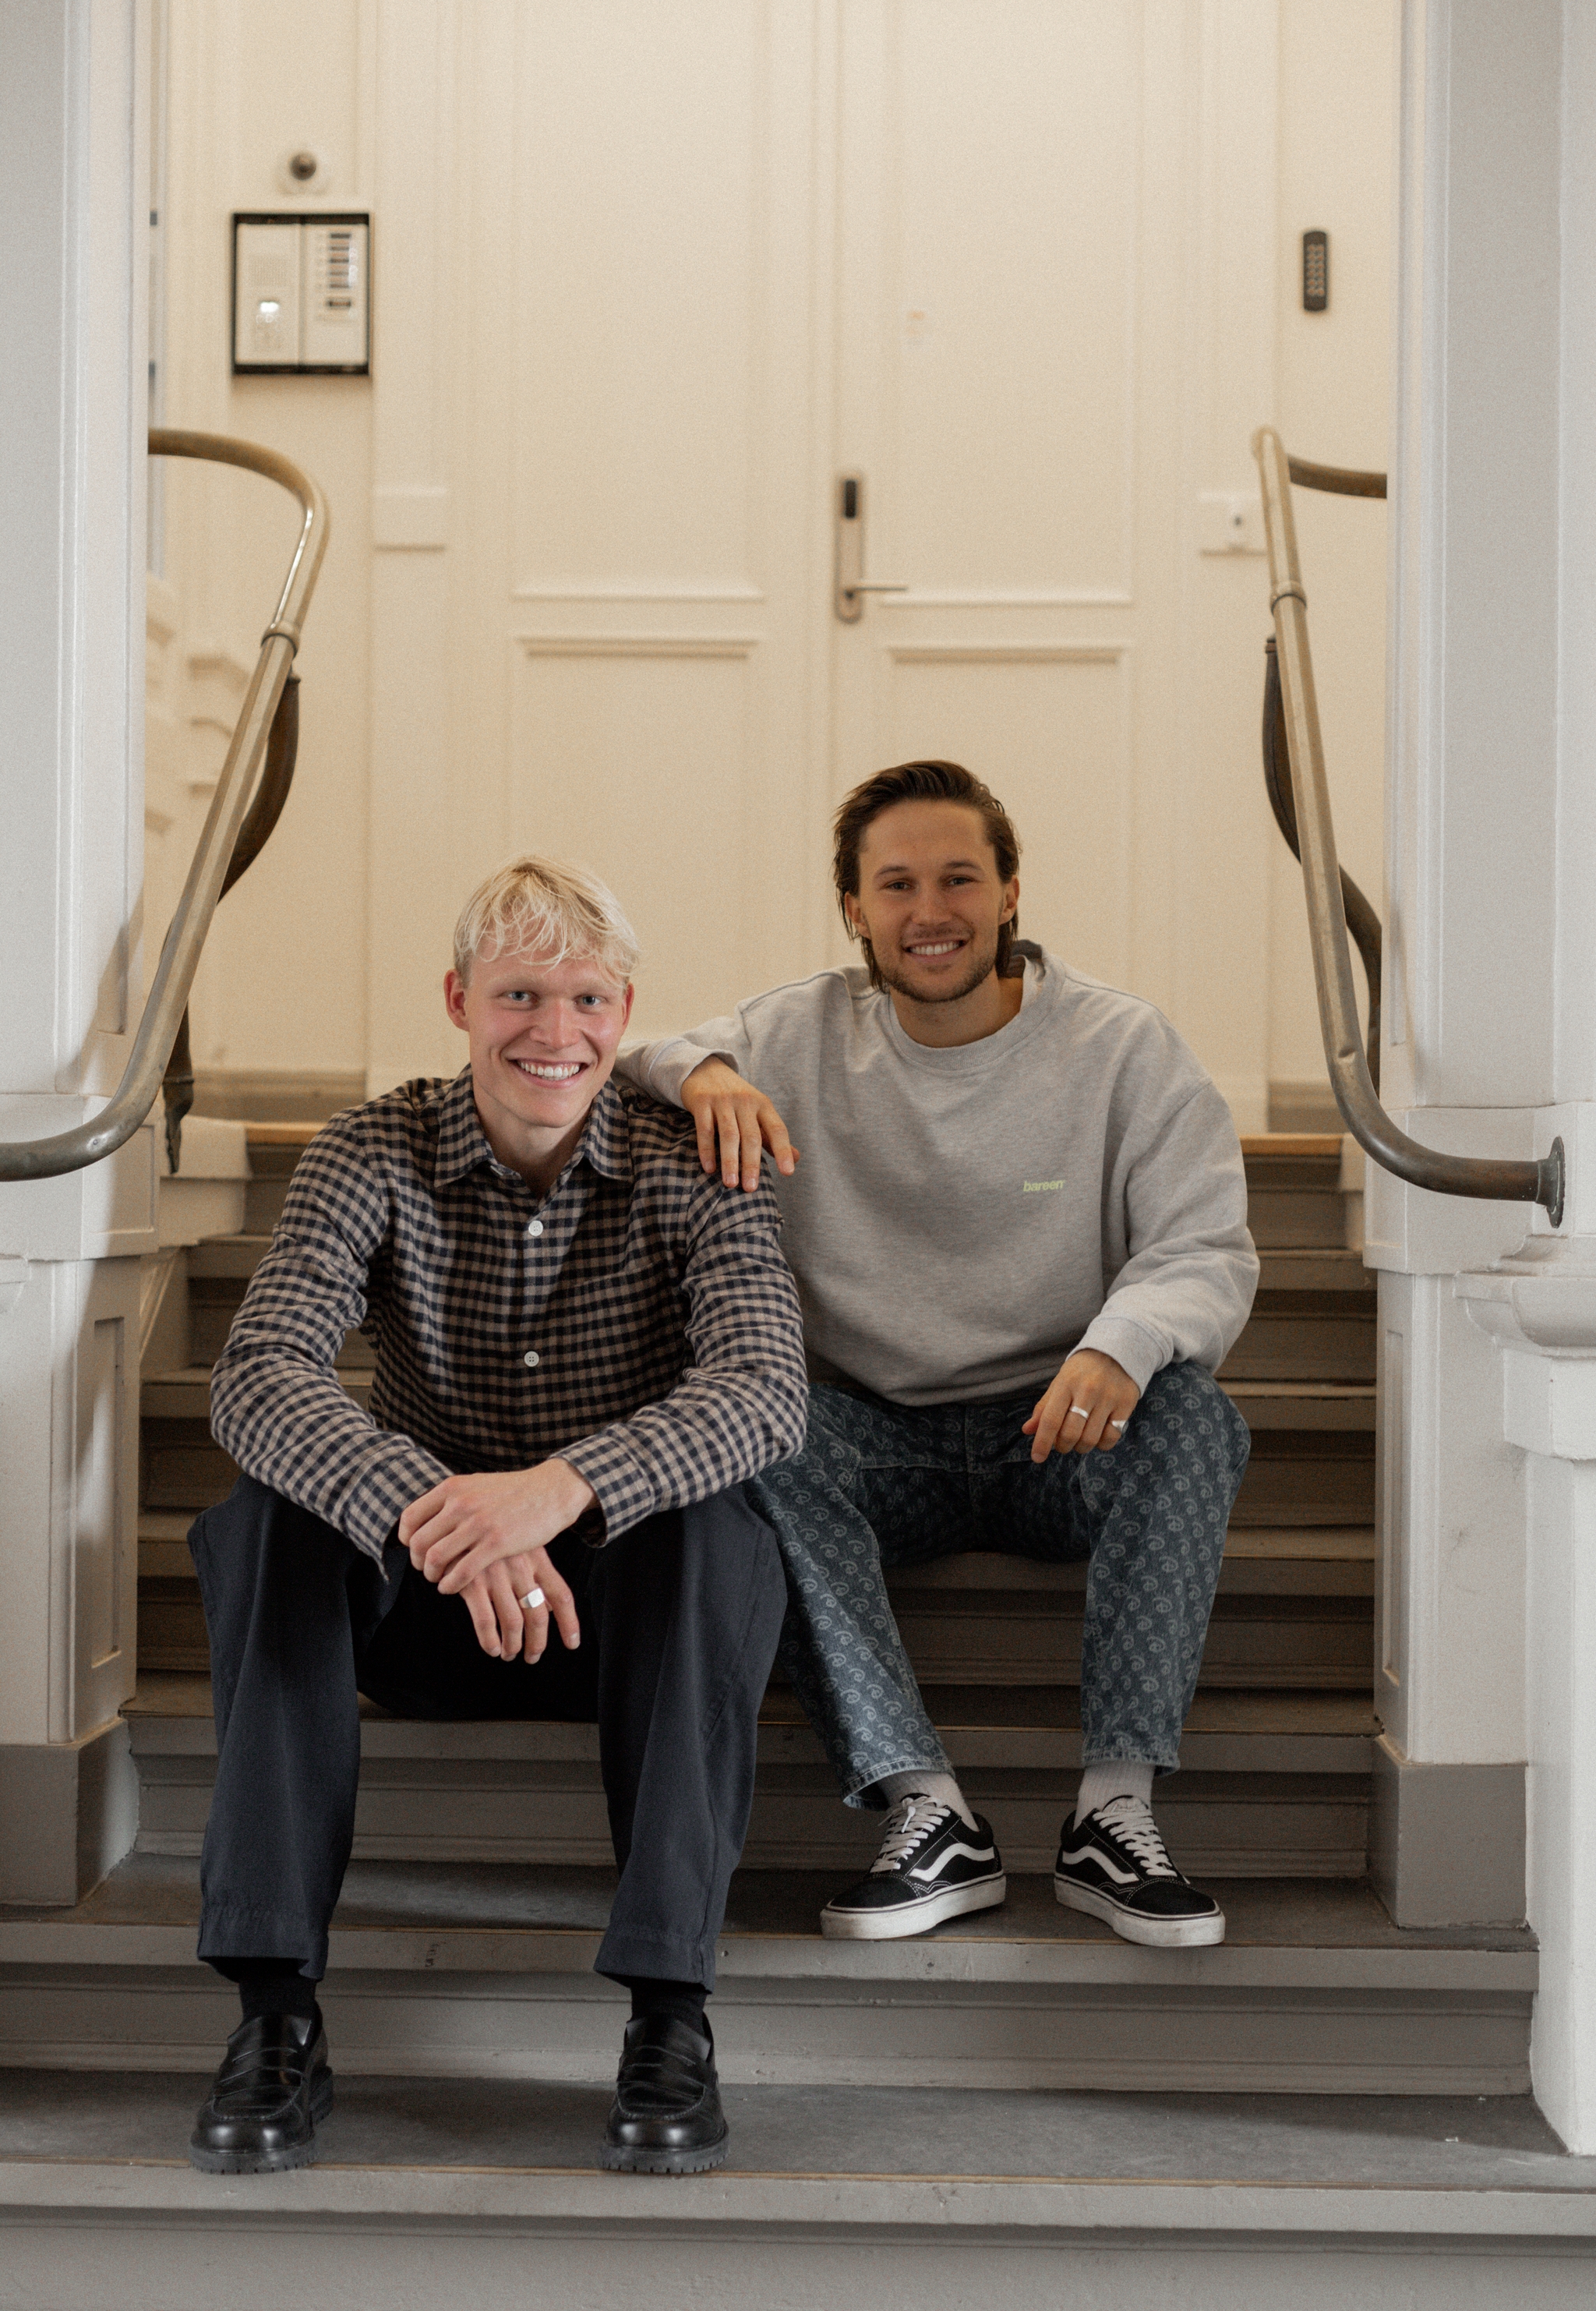 Christian Thobo Køhler og Martin Lauritsen om at gøre en lys idé til virkelighed